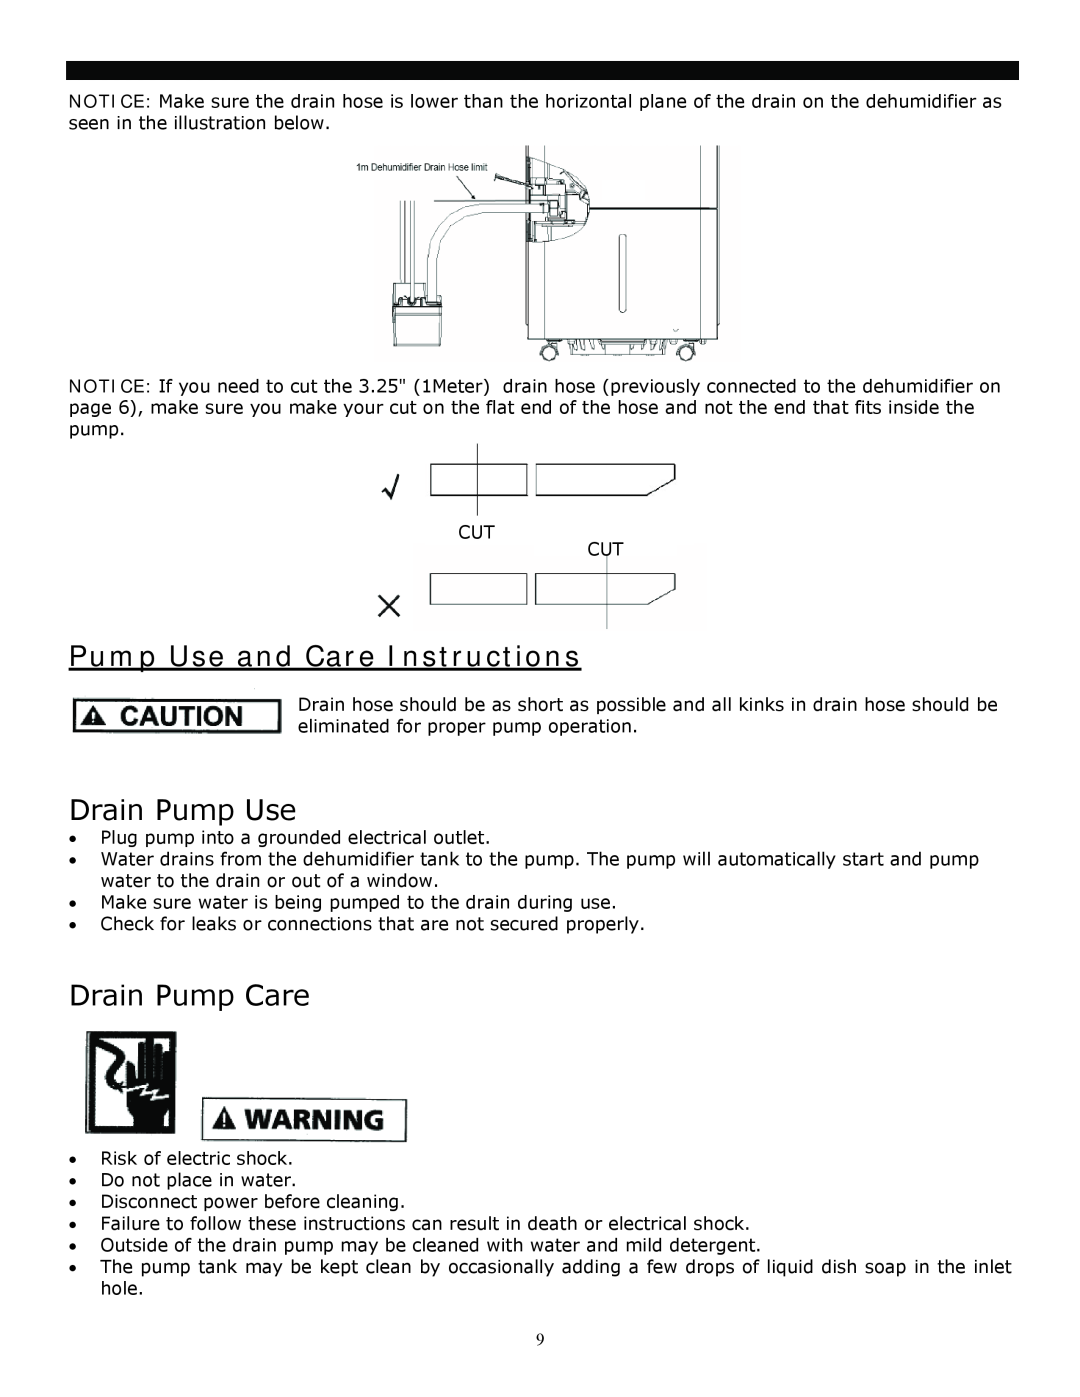 Soleus Air 3M, 1M manual Pump Use and Care Instructions, Drain Pump Use, Drain Pump Care 